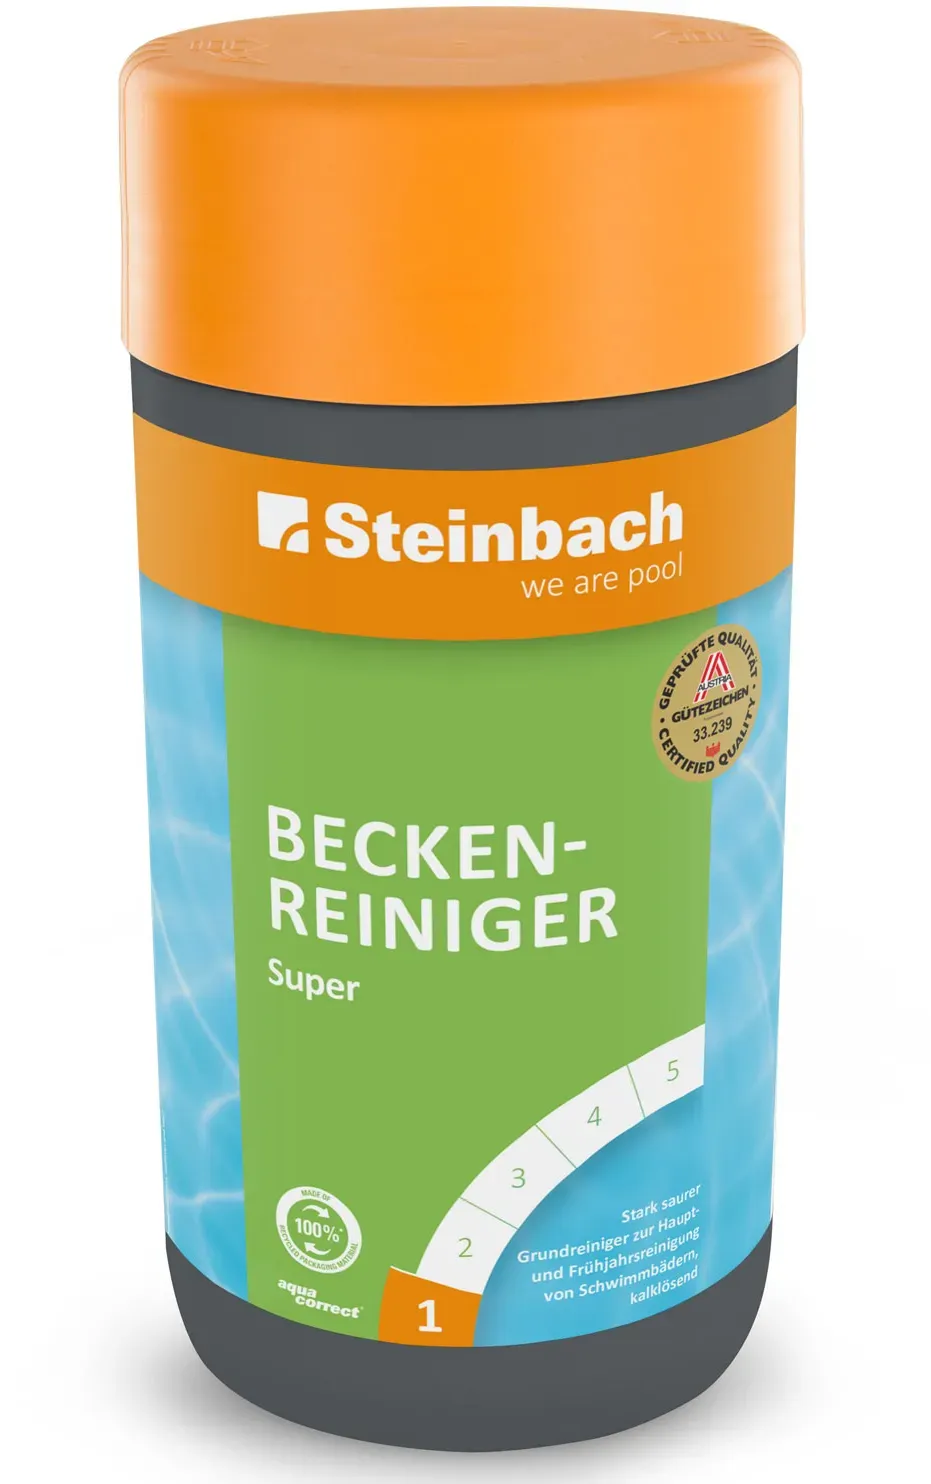 Steinbach Beckenreiniger Super Reiniger Poolreiniger Reinigung Beckenreinigung